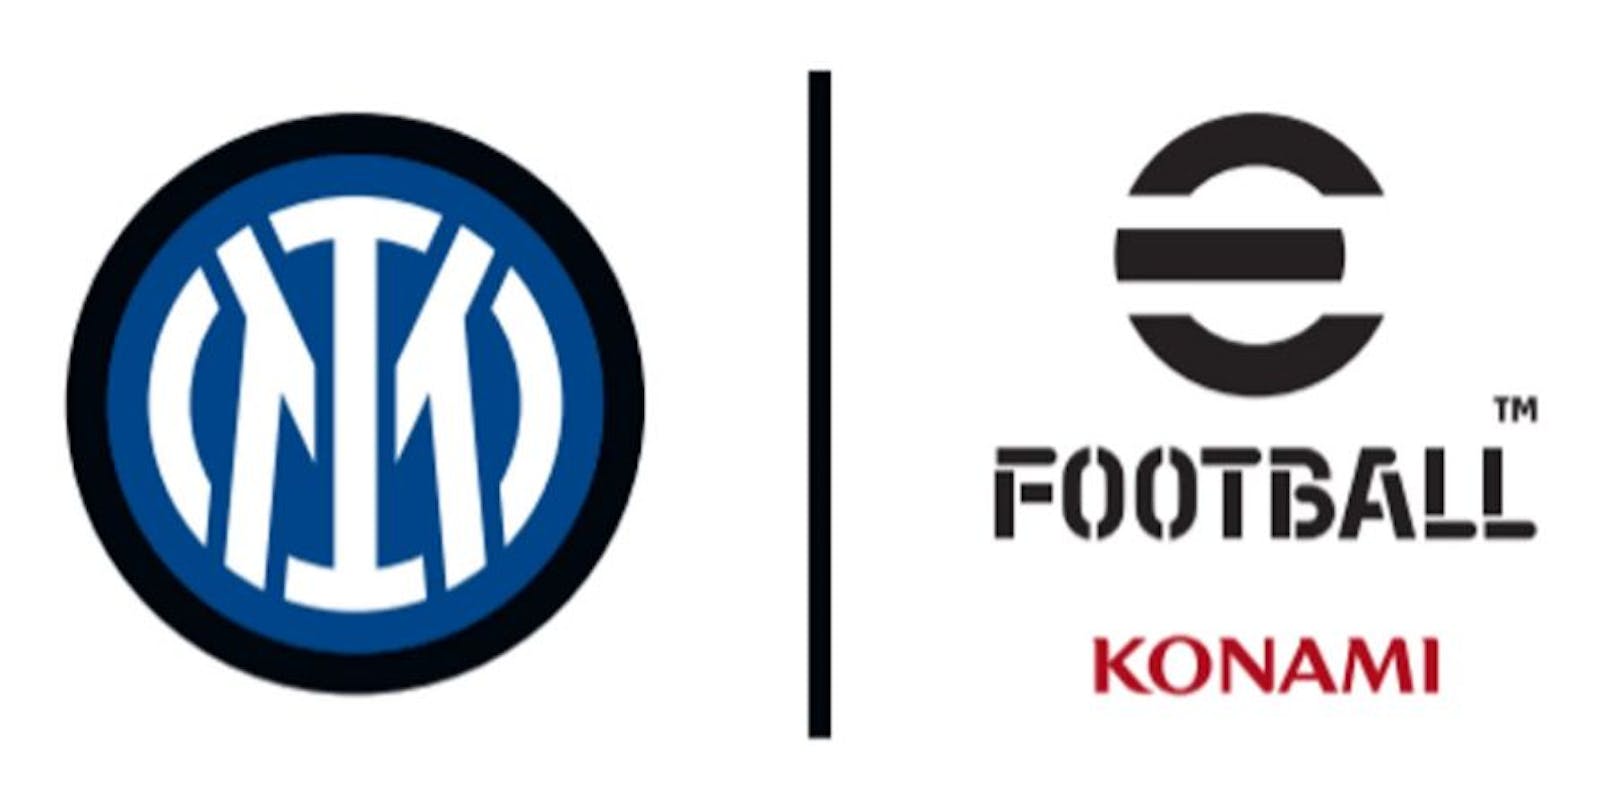 Konami verkündet vielschichtige neue Partnerschaft mit Inter Mailand.